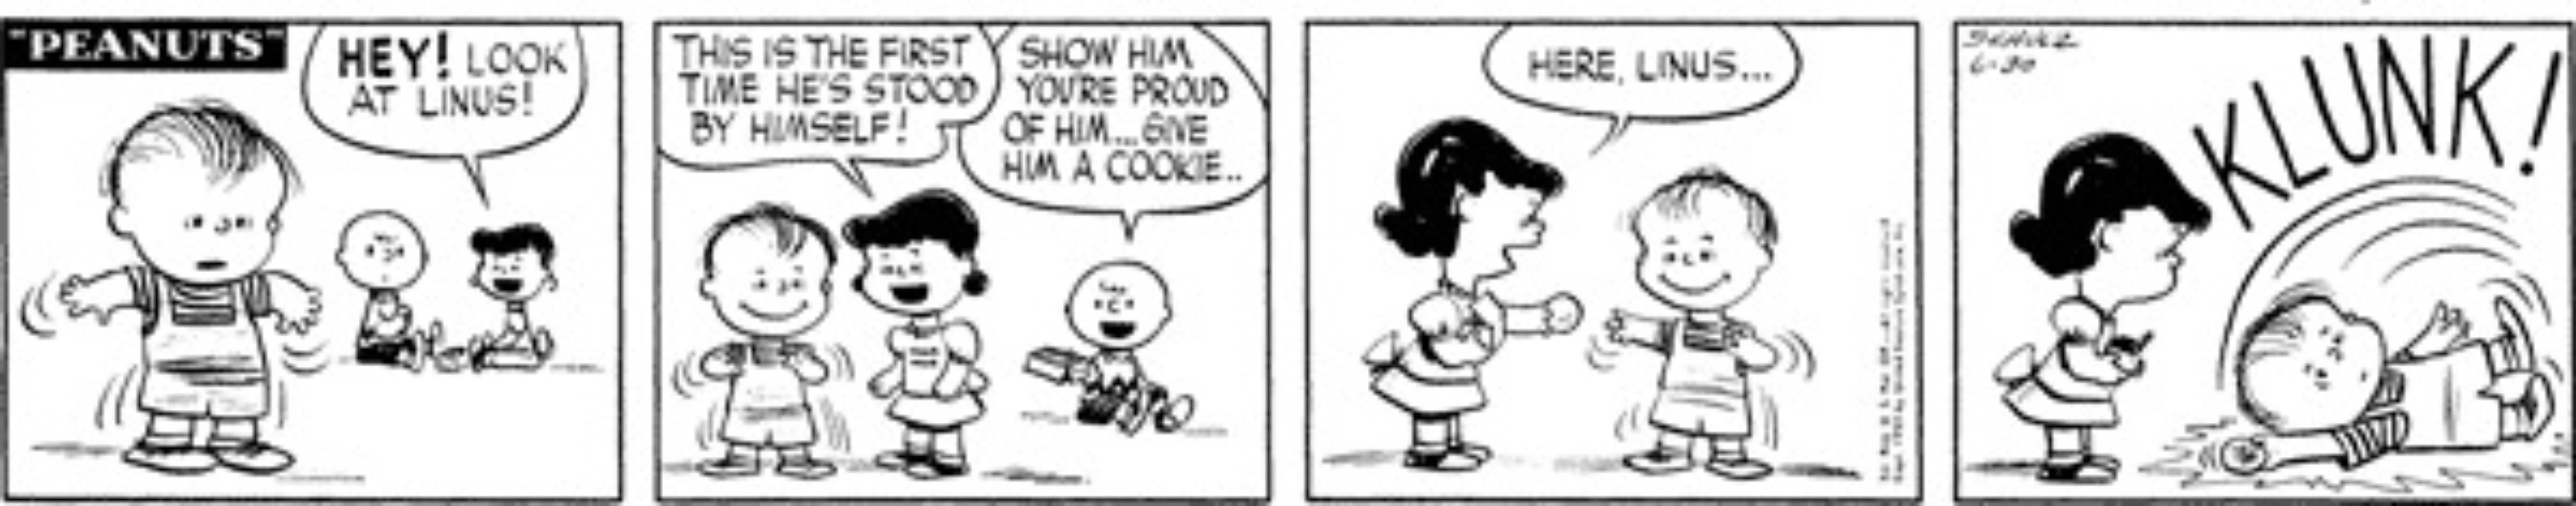 Linus è ancora un bambino